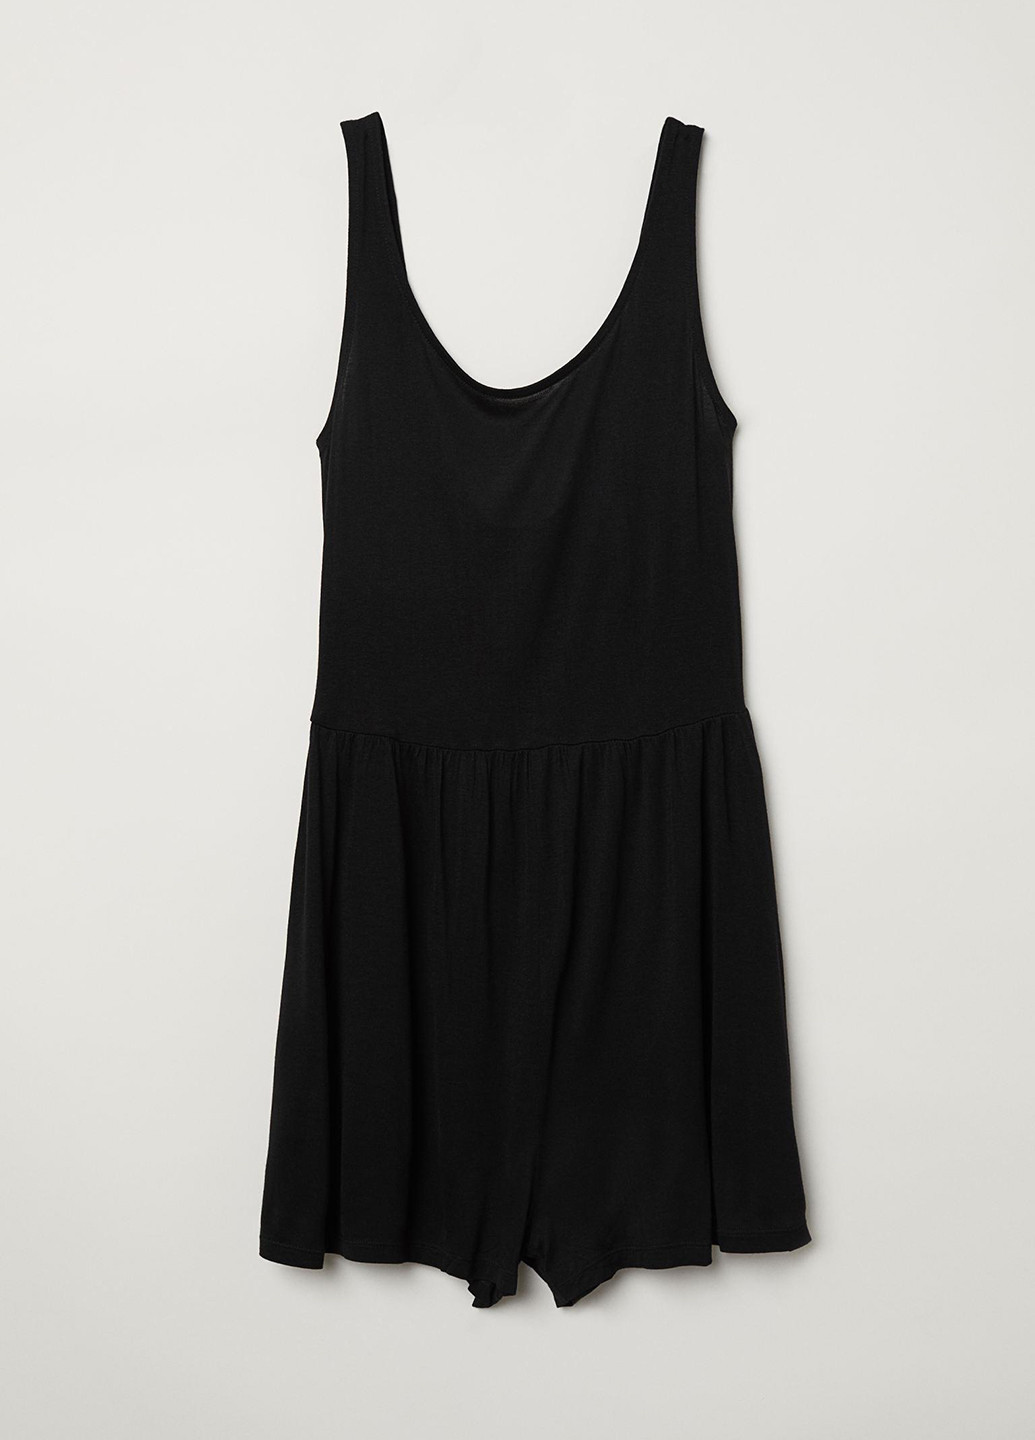 Комбінезон H&M комбінезон-шорти однотонний чорний кежуал віскоза, трикотаж